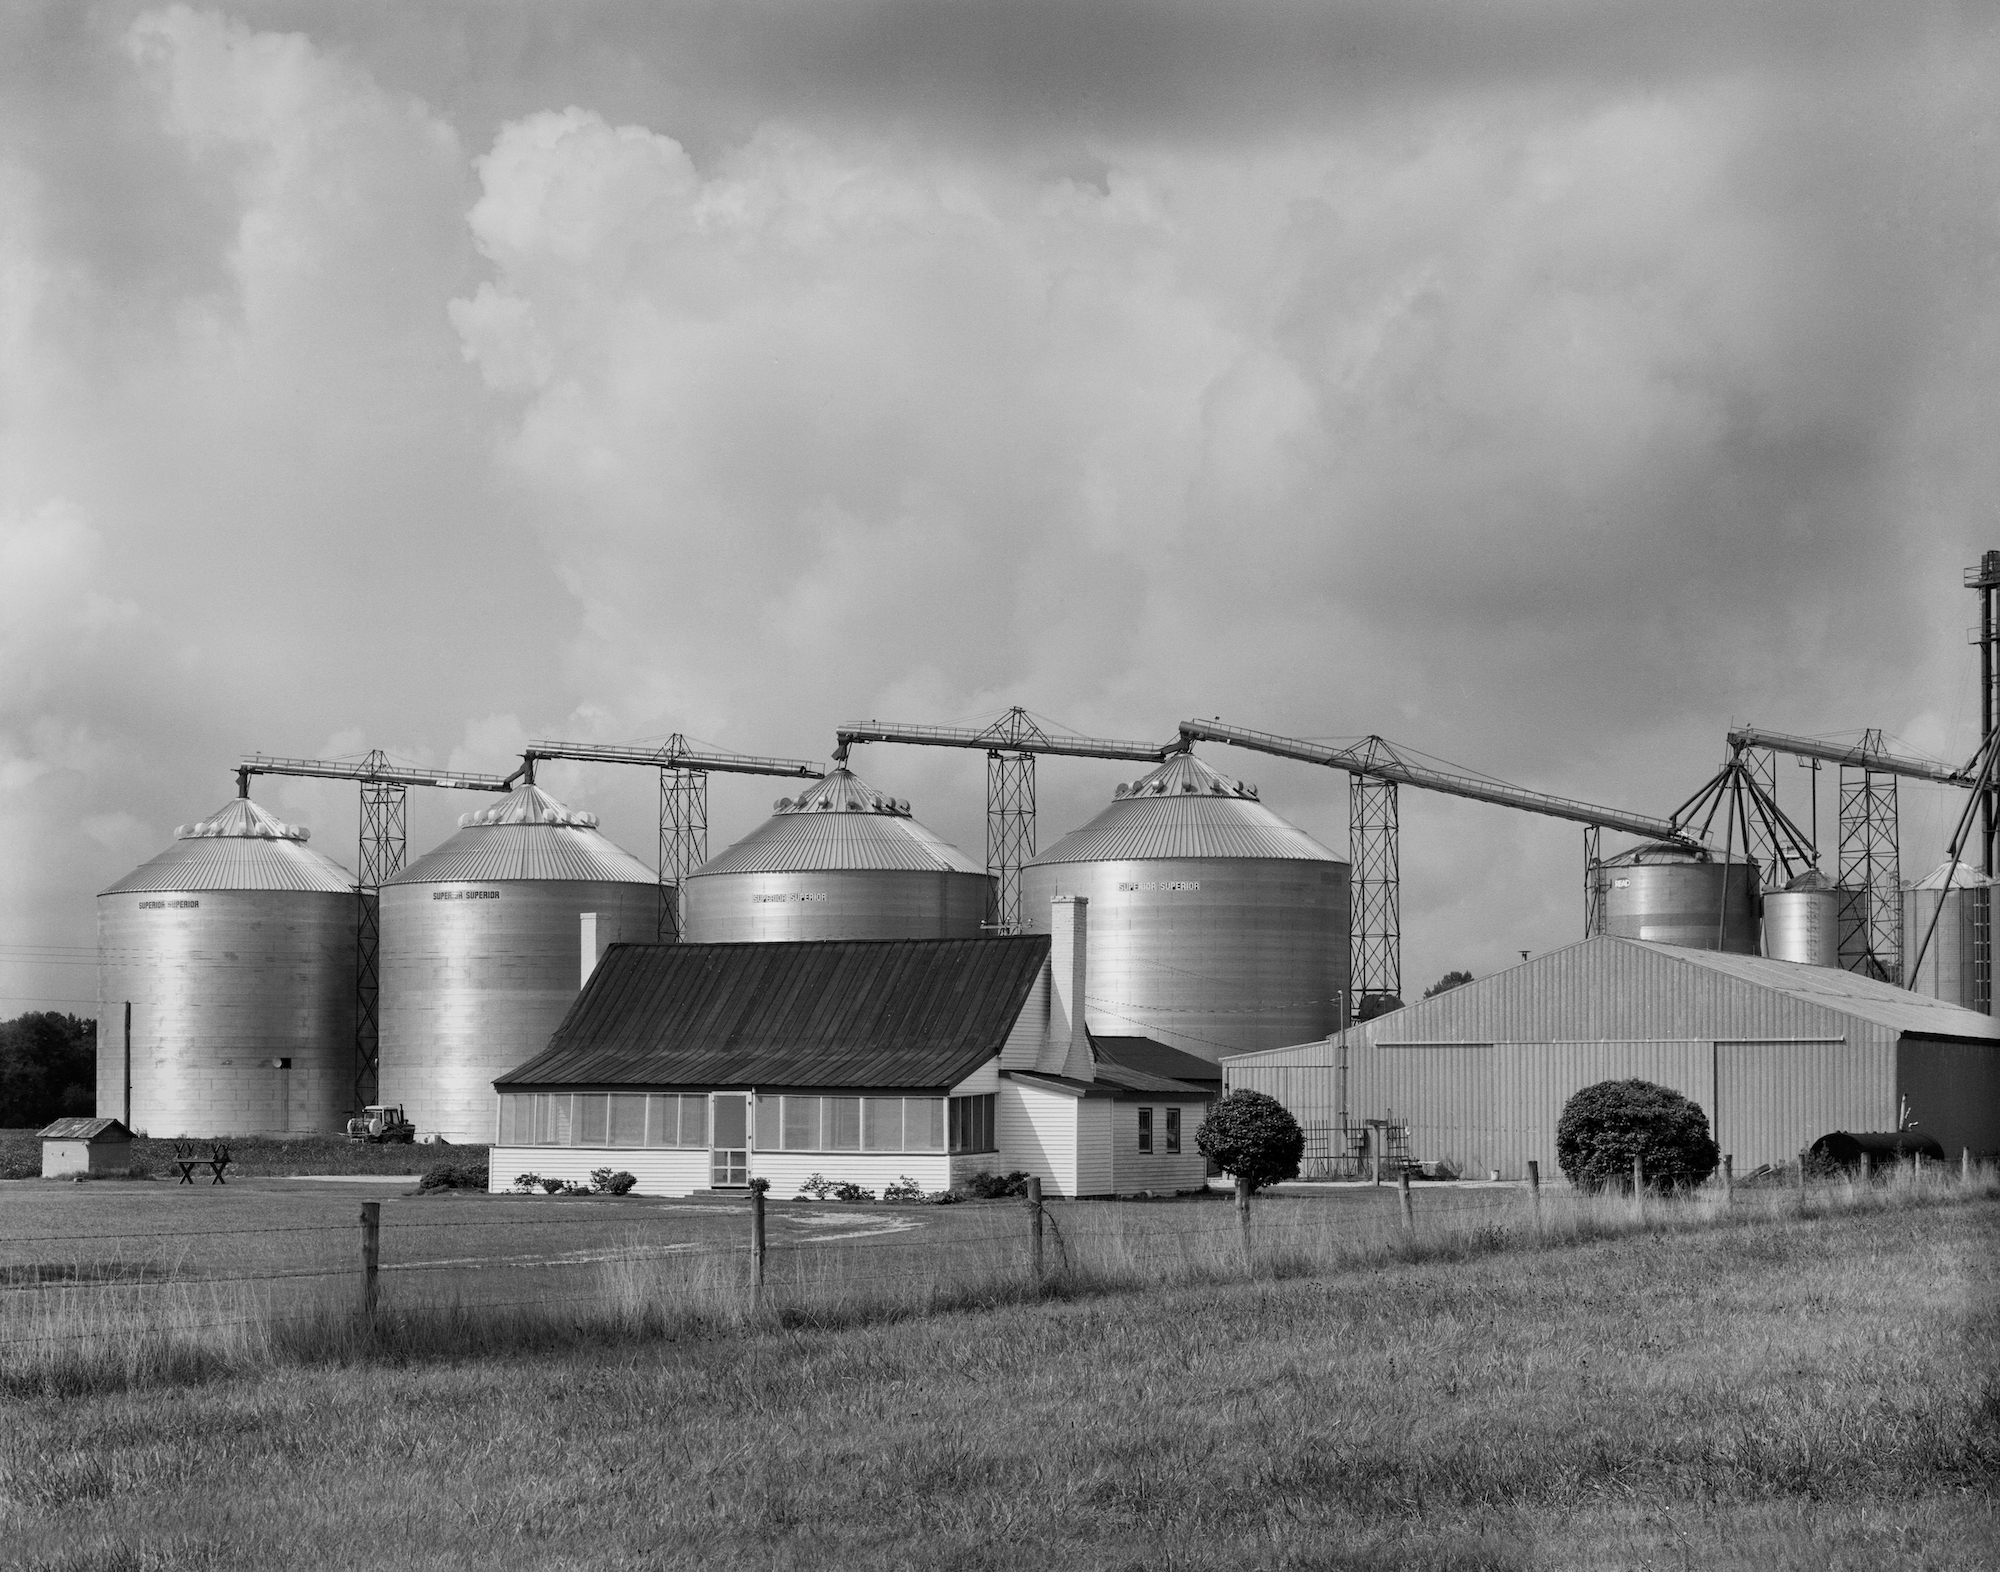 “Farmhouse & Grain Bins” en Pungo, Virginia, entre las primeras fotografías de Michael Wade tomadas en 1980. (Cortesía de Michael Wade)